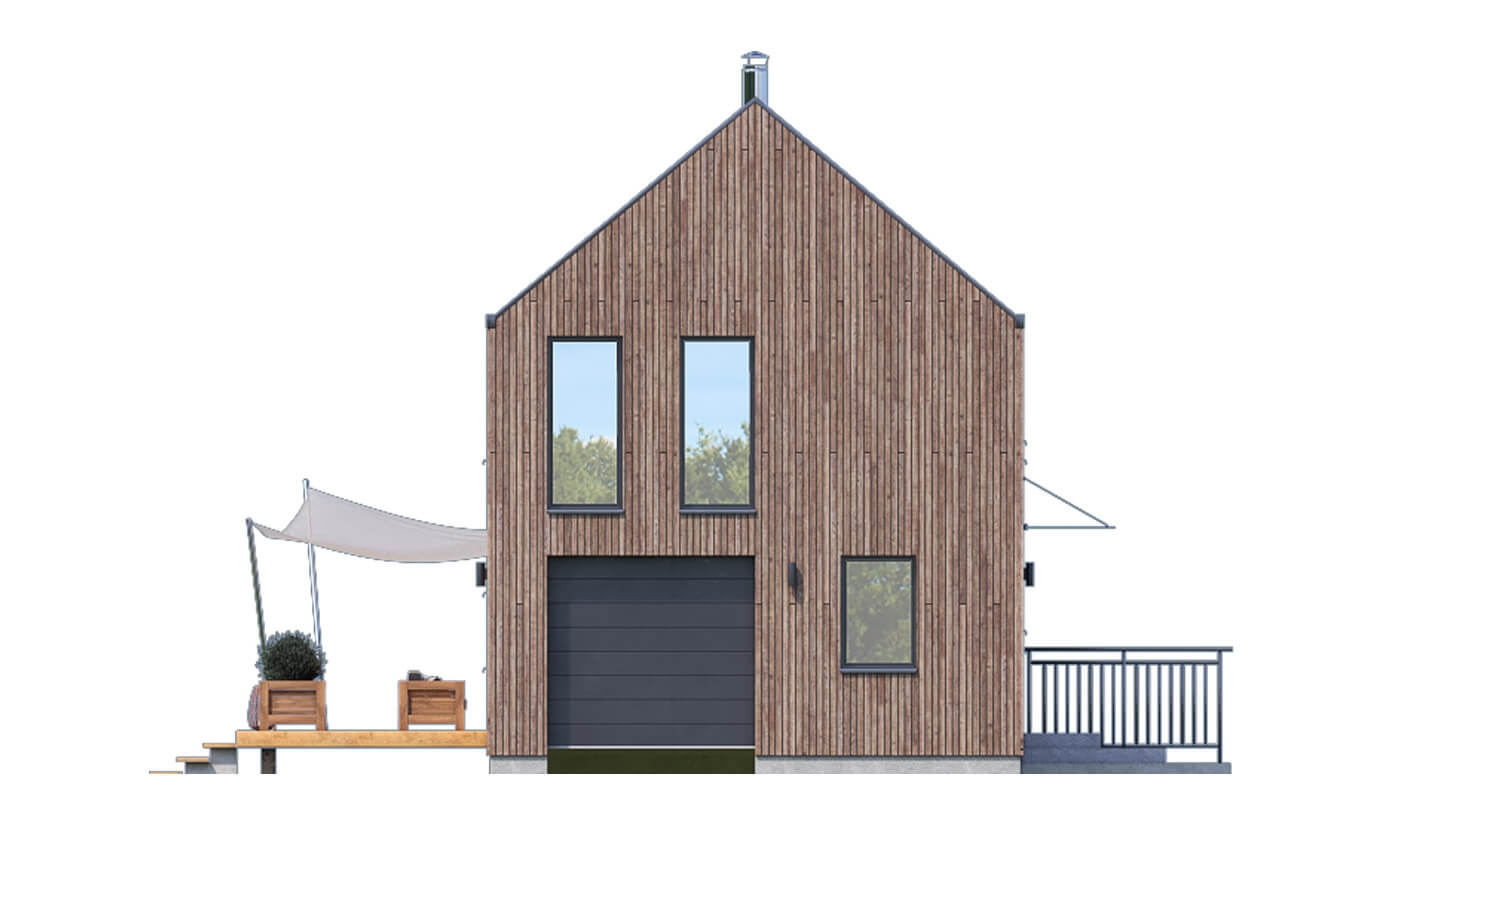 Pohľad 1. - Projekt moderního domu s garáží, který je vhodný i na úzký pozemek.